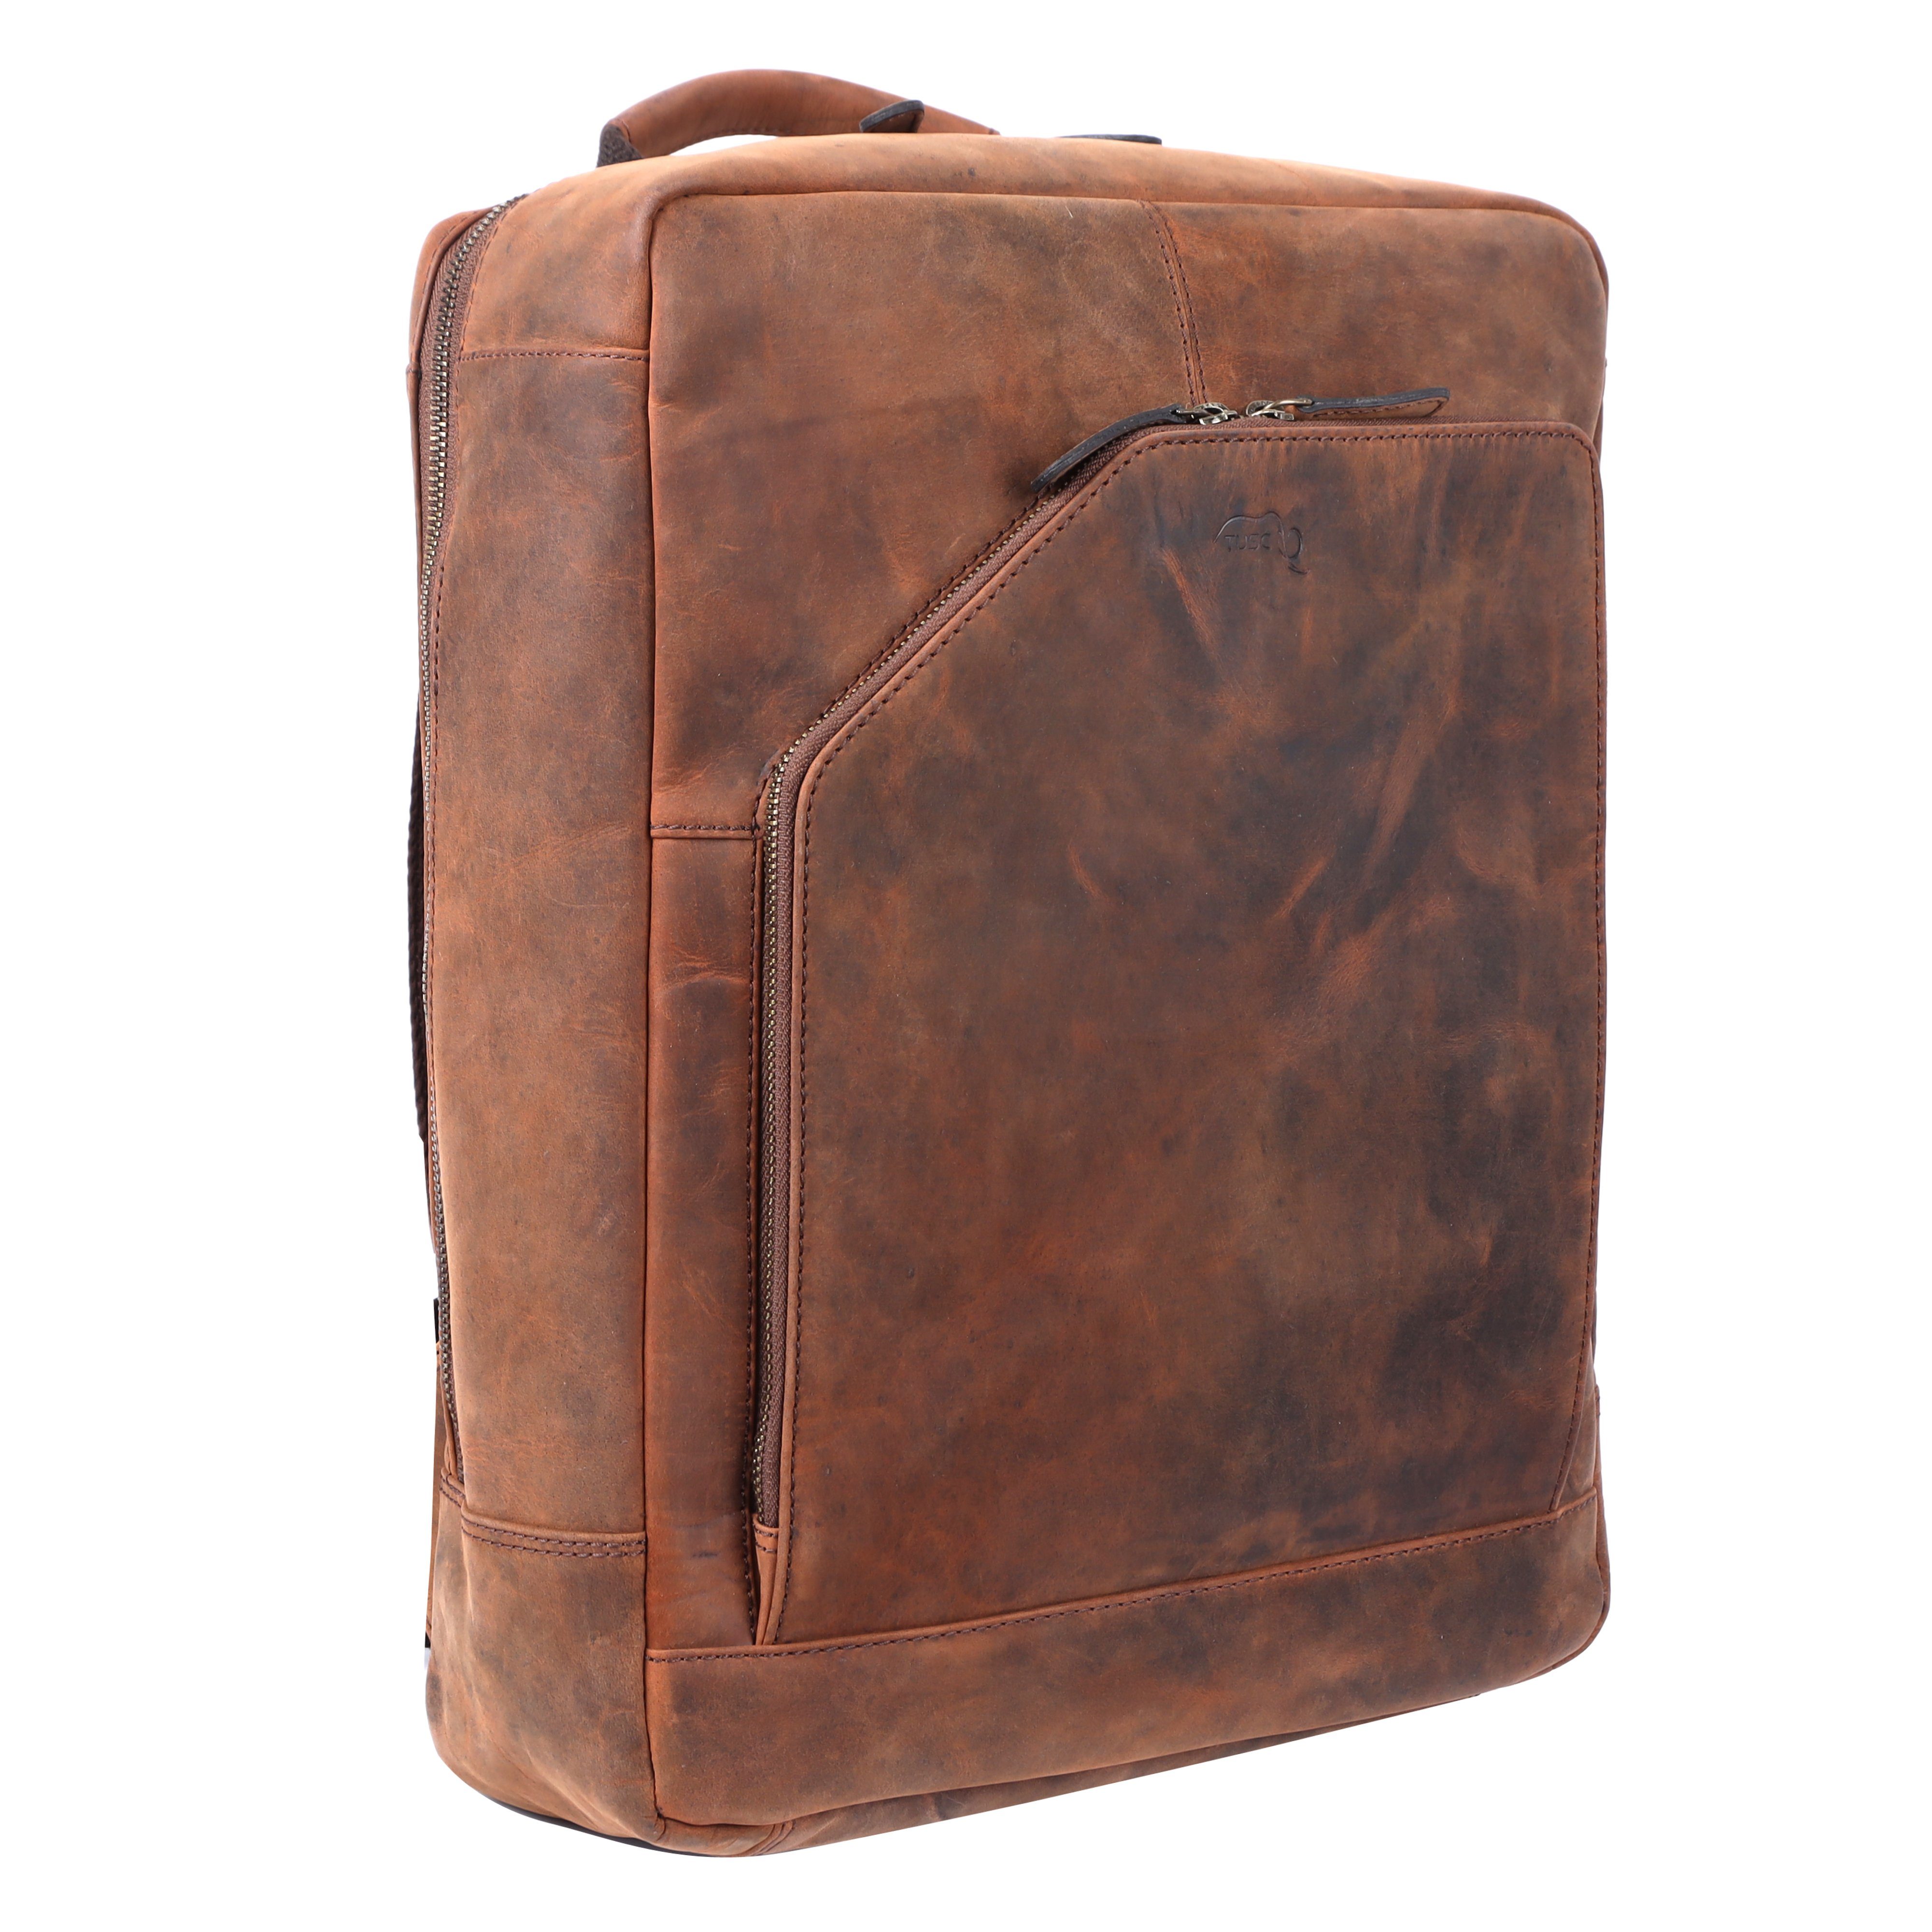 TUSC Tagesrucksack Corvus 15M, Premium Rucksack aus Leder für Laptop bis 15,6 Zoll. Walnut | Rucksacktaschen